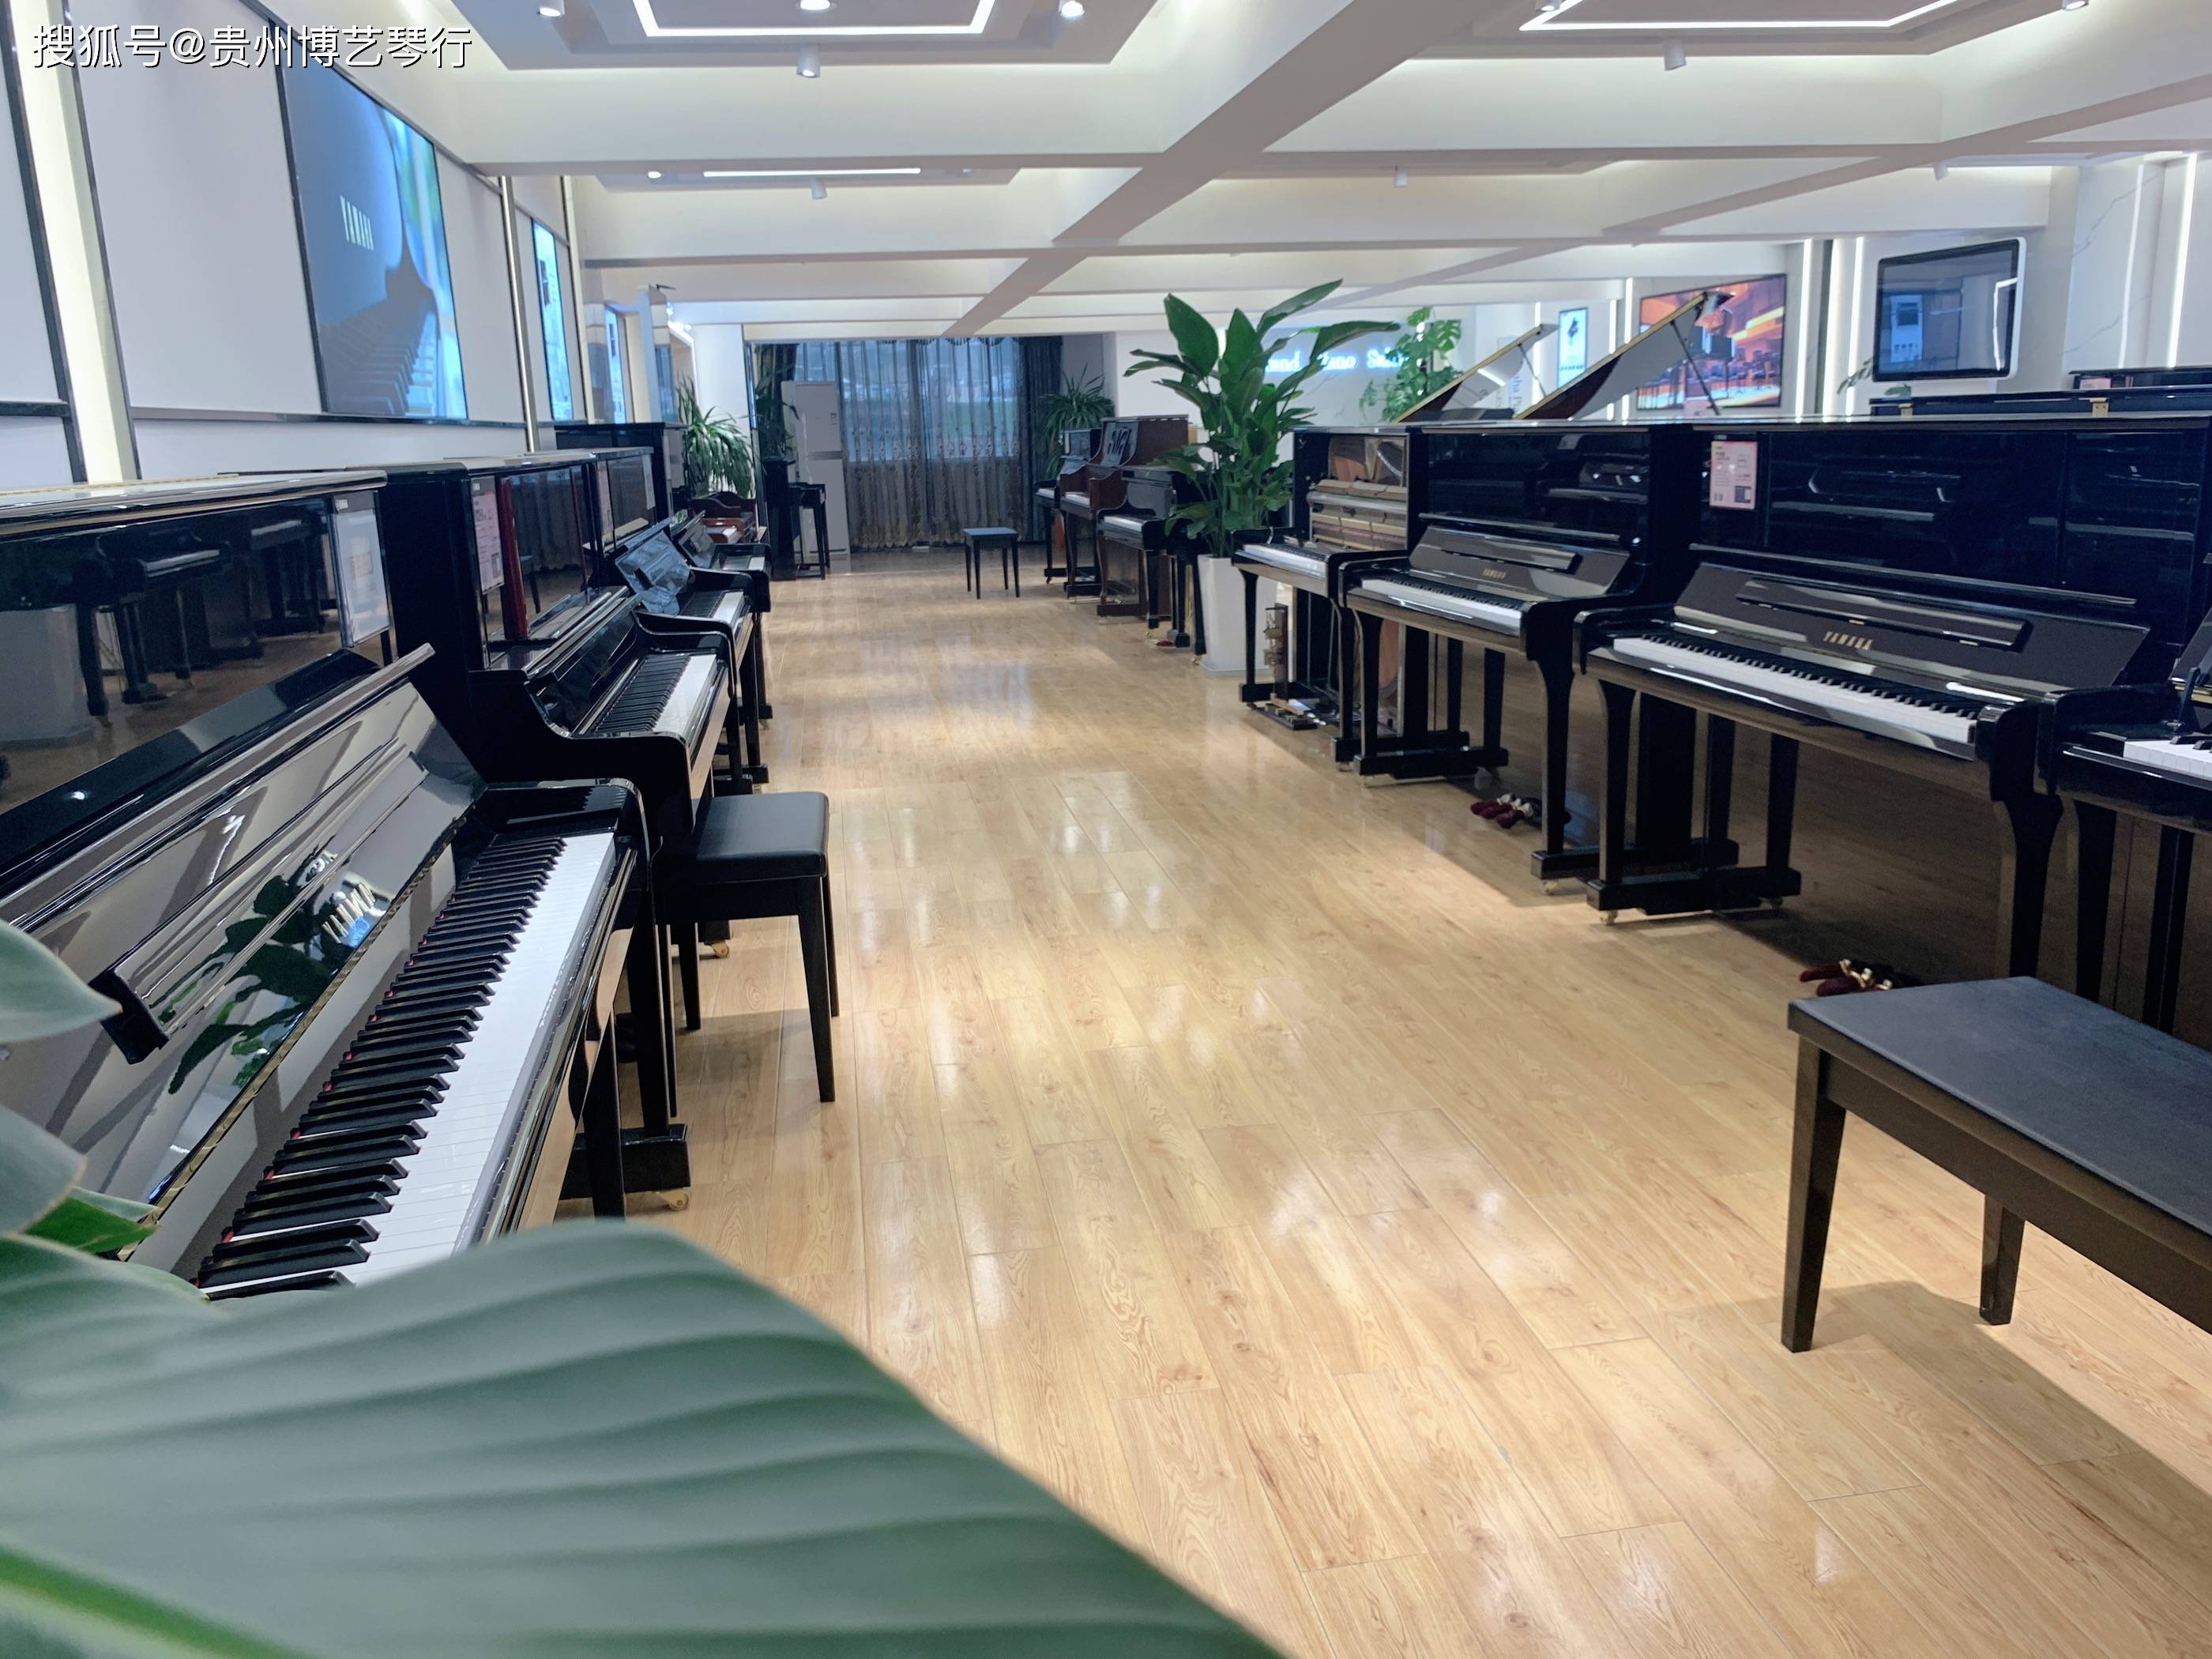 雅马哈钢琴专卖店升级改造完工新形象新面貌展示